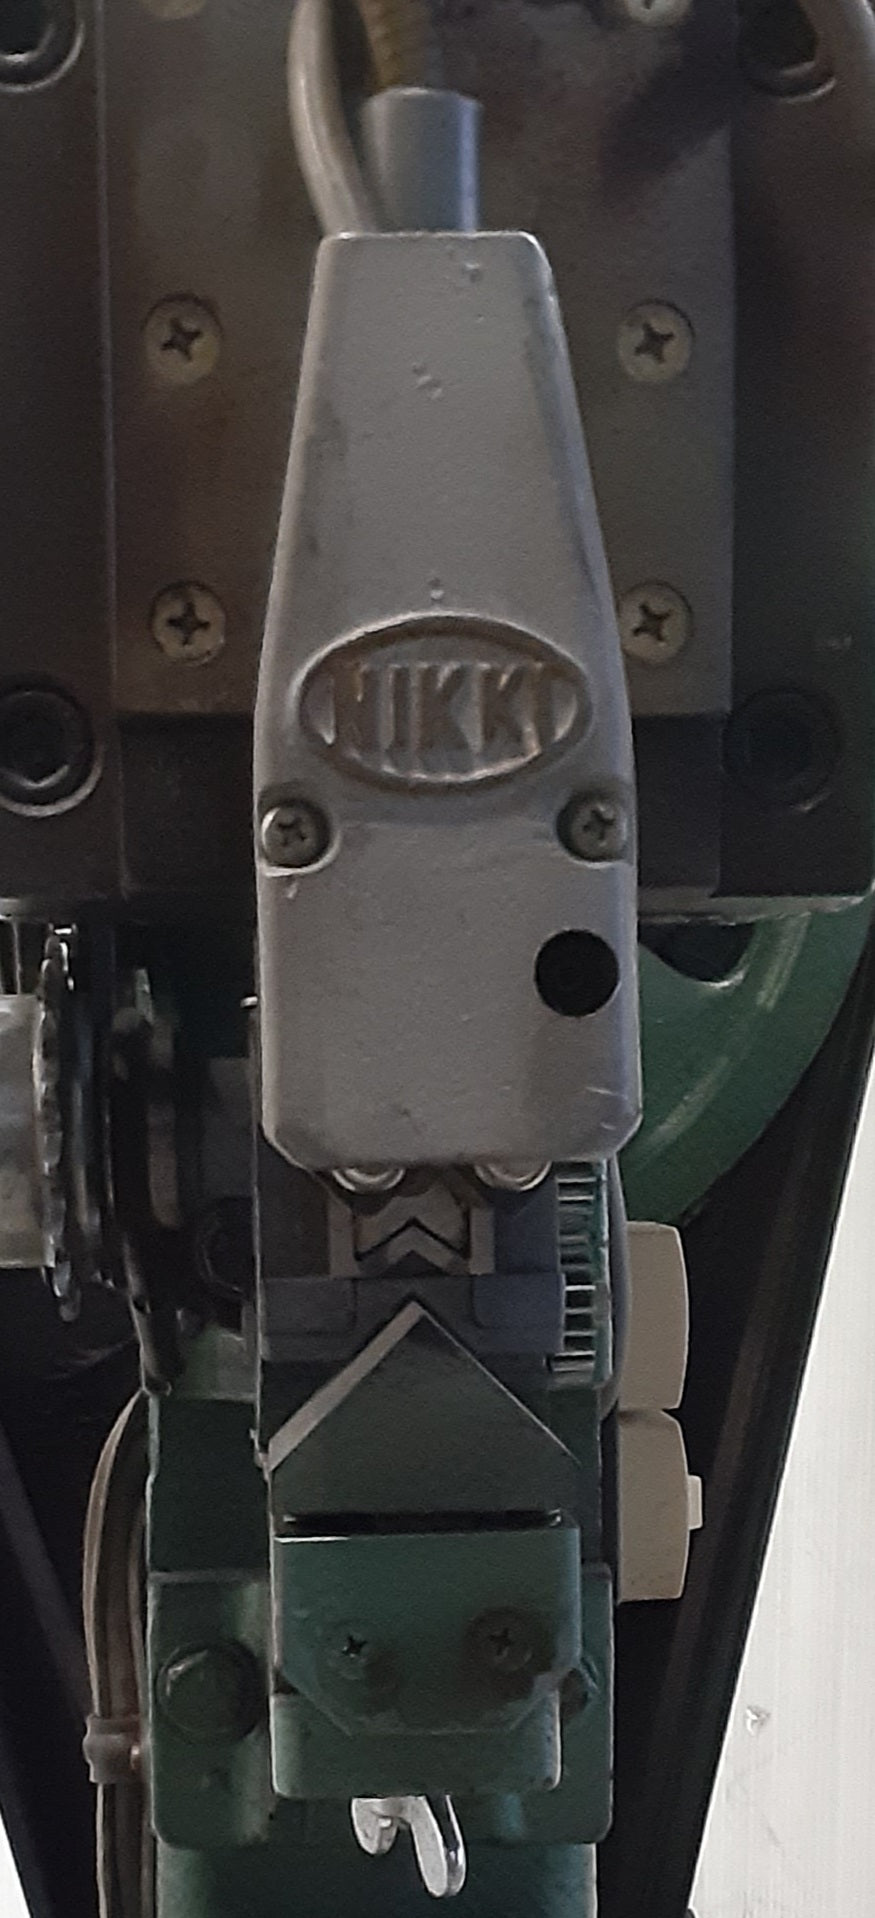 ニッキ工業(NIKKI)製 電動式 箱隅テープ留め機 (箱の角にテープを貼る機械)